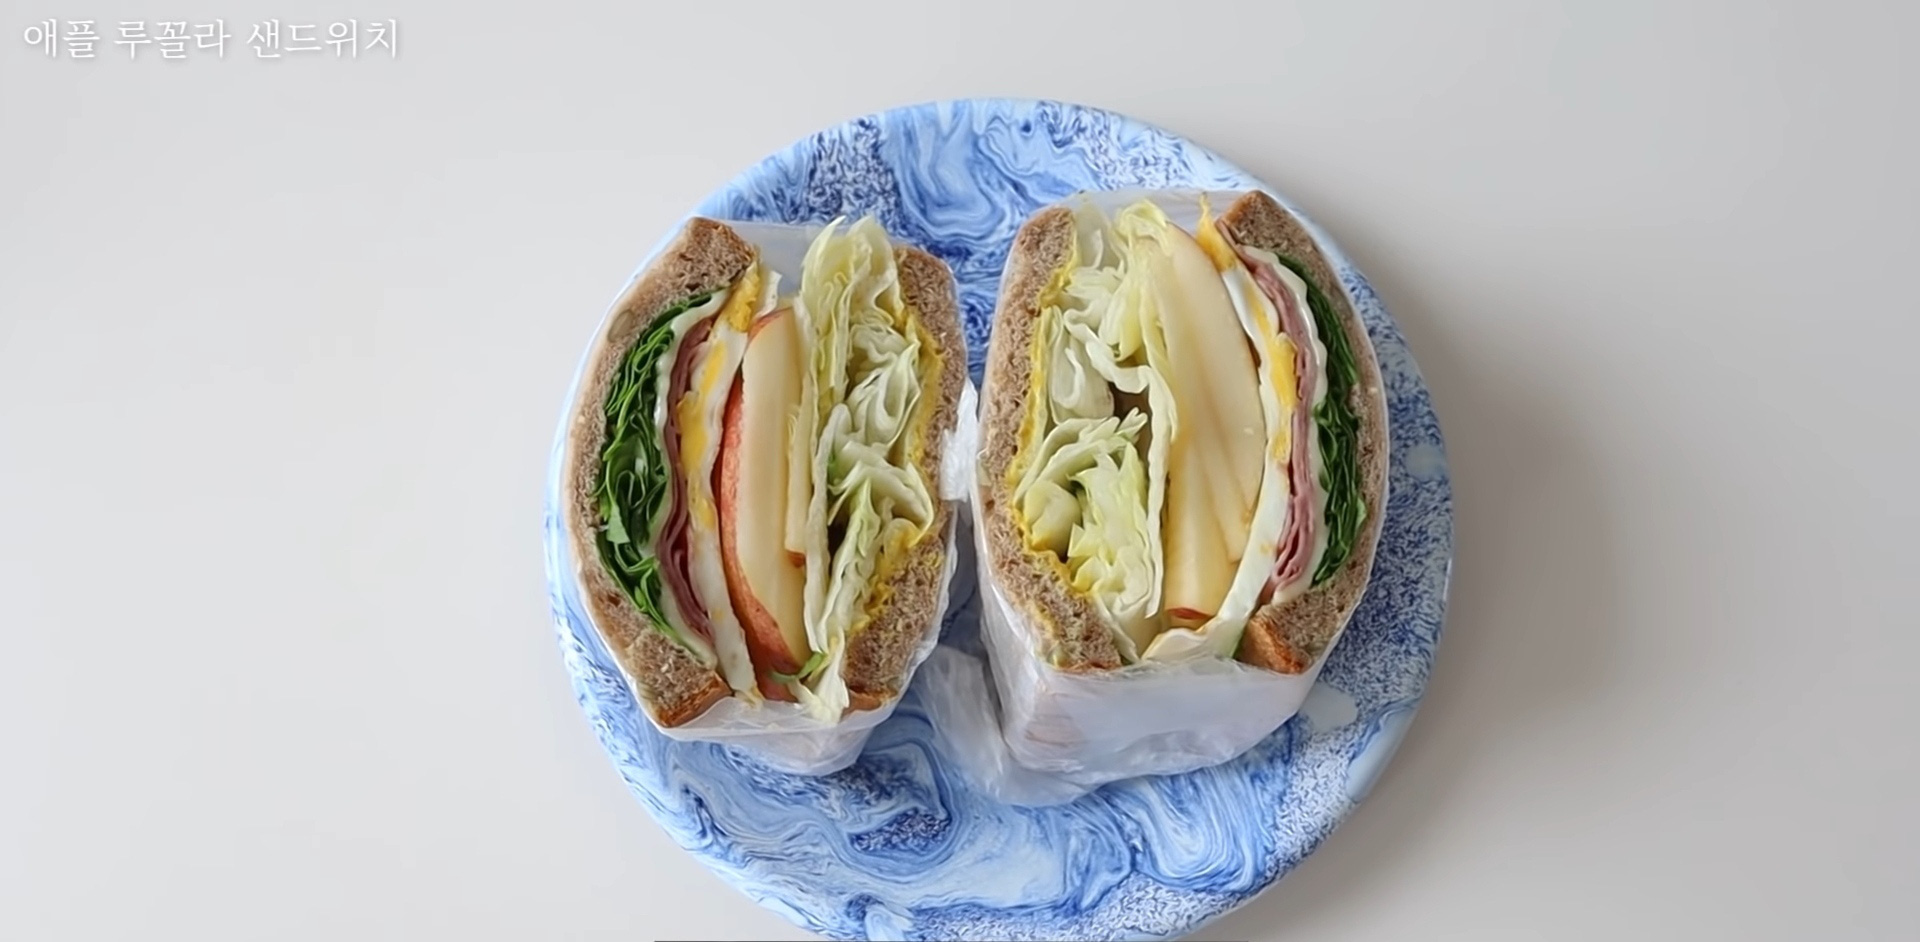 Vlogger Hàn chia sẻ bí quyết giảm 10kg nhờ tự tay làm những chiếc sandwich theo công thức của riêng mình - Ảnh 10.